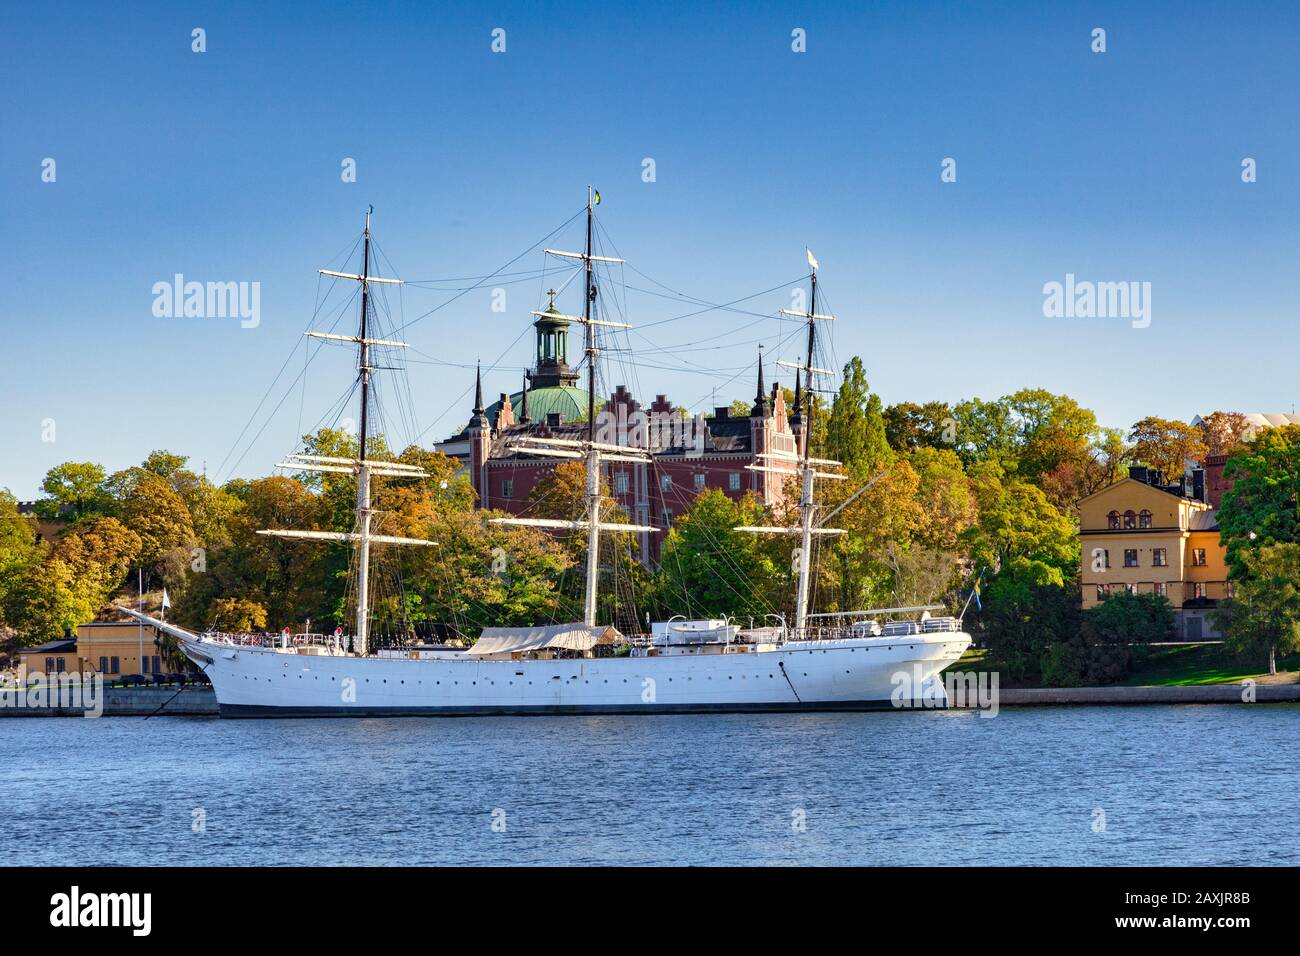 16 settembre 2018: Stoccolma, Svezia - AF Chapman, una nave in acciaio completamente rigata ormeggiata sulla costa occidentale dell'isolotto Skeppsholmen, che funge da a... Foto Stock